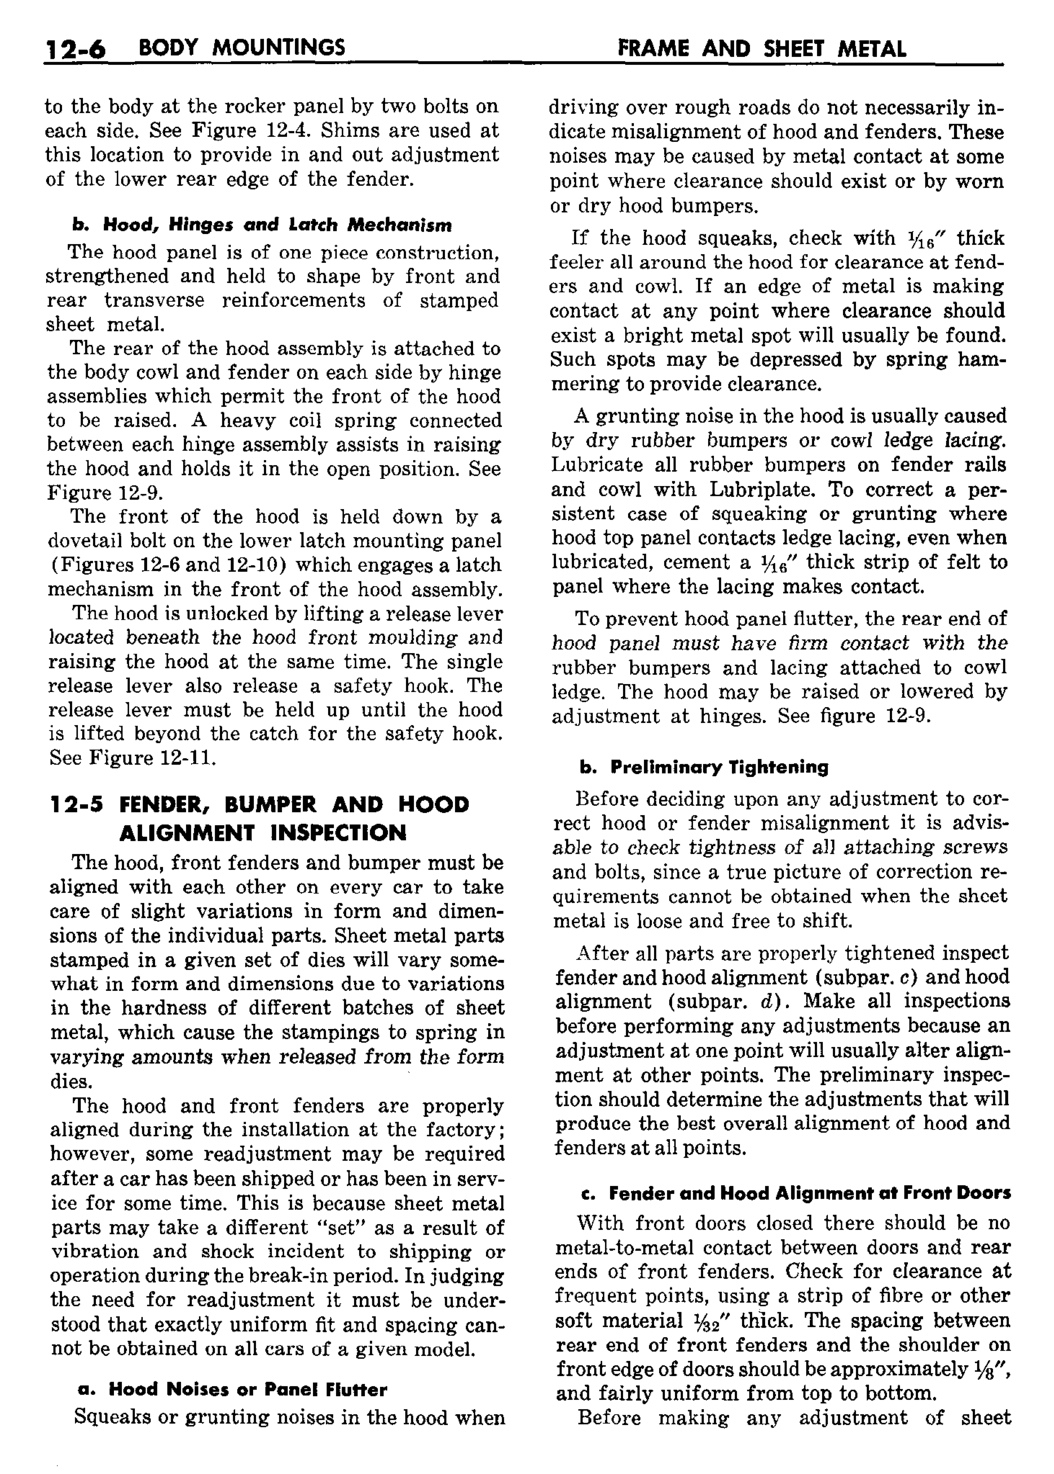 n_13 1959 Buick Shop Manual - Frame & Sheet Metal-006-006.jpg